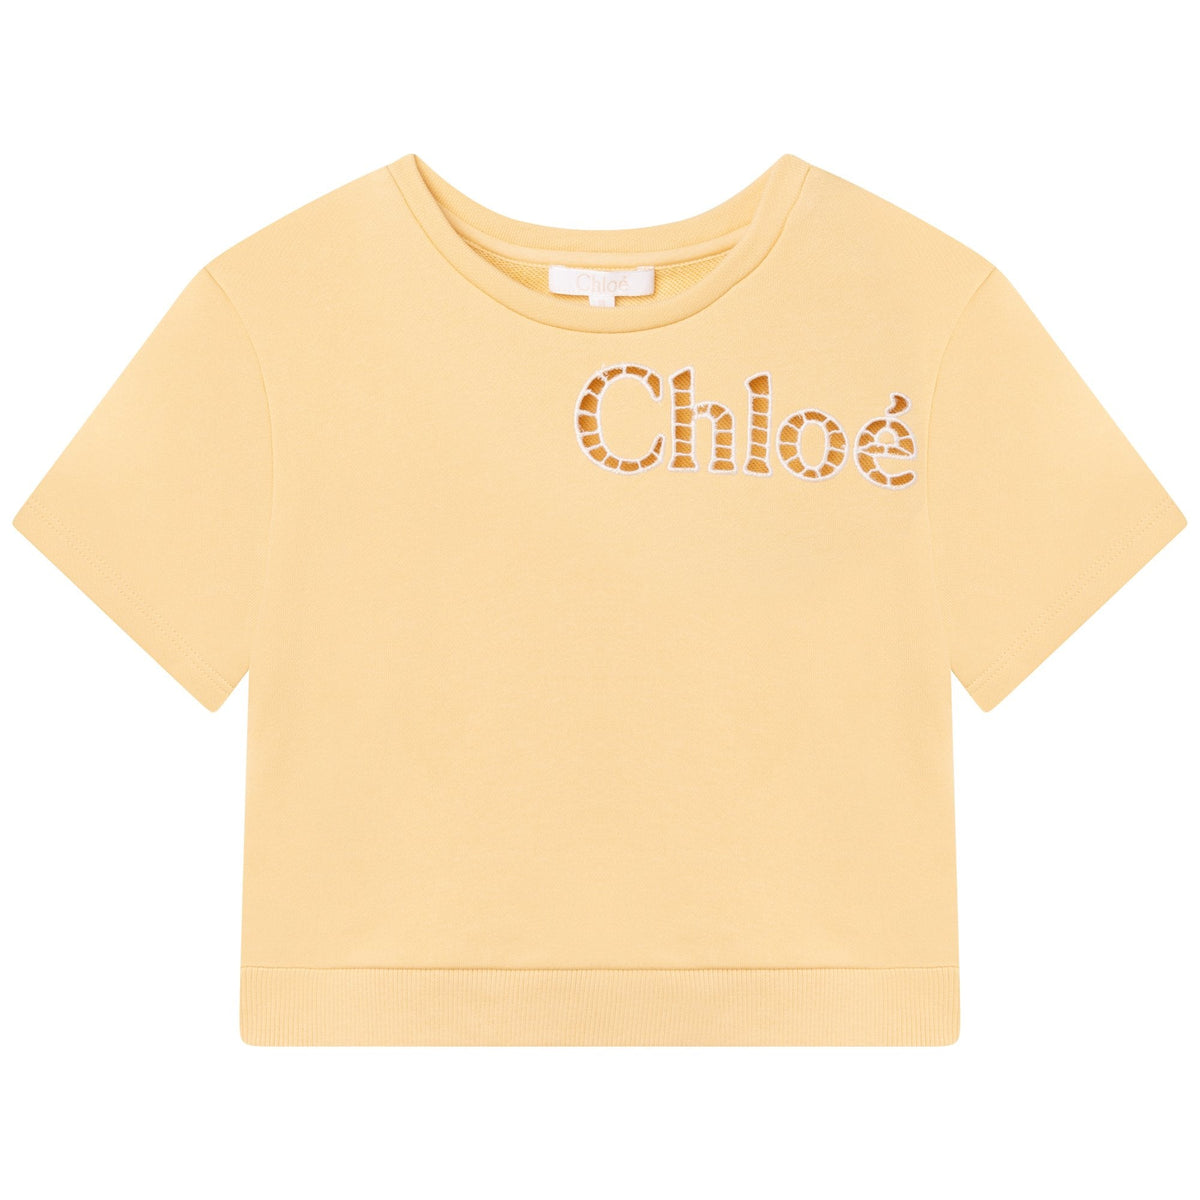 Chloe Girls Yellow Short Sleeved Sweatshirt